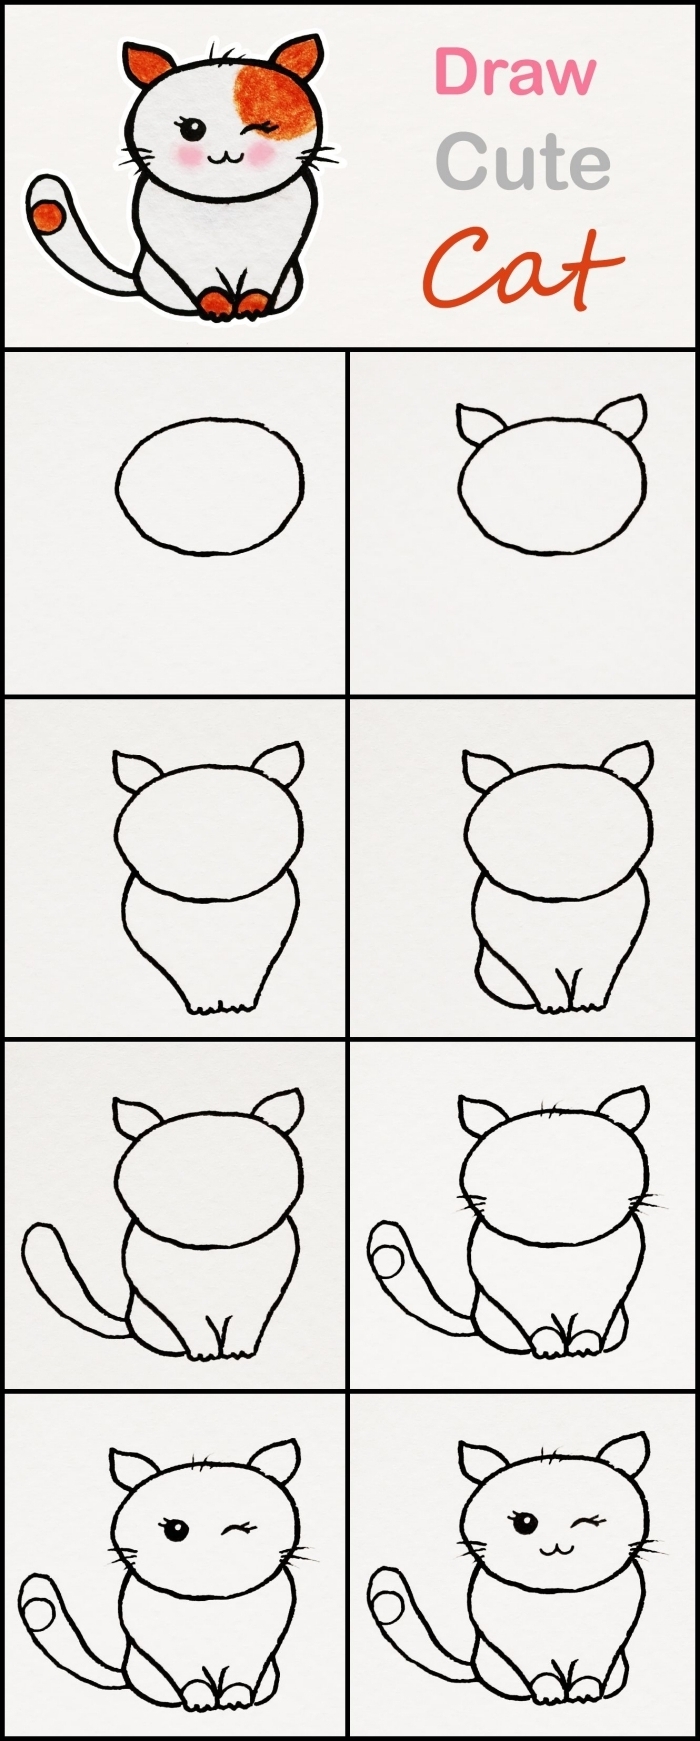 pas à pas pour réaliser un dessin de chat mignon facile avec les enfants, tuto dessin au crayon avec formes géométriques